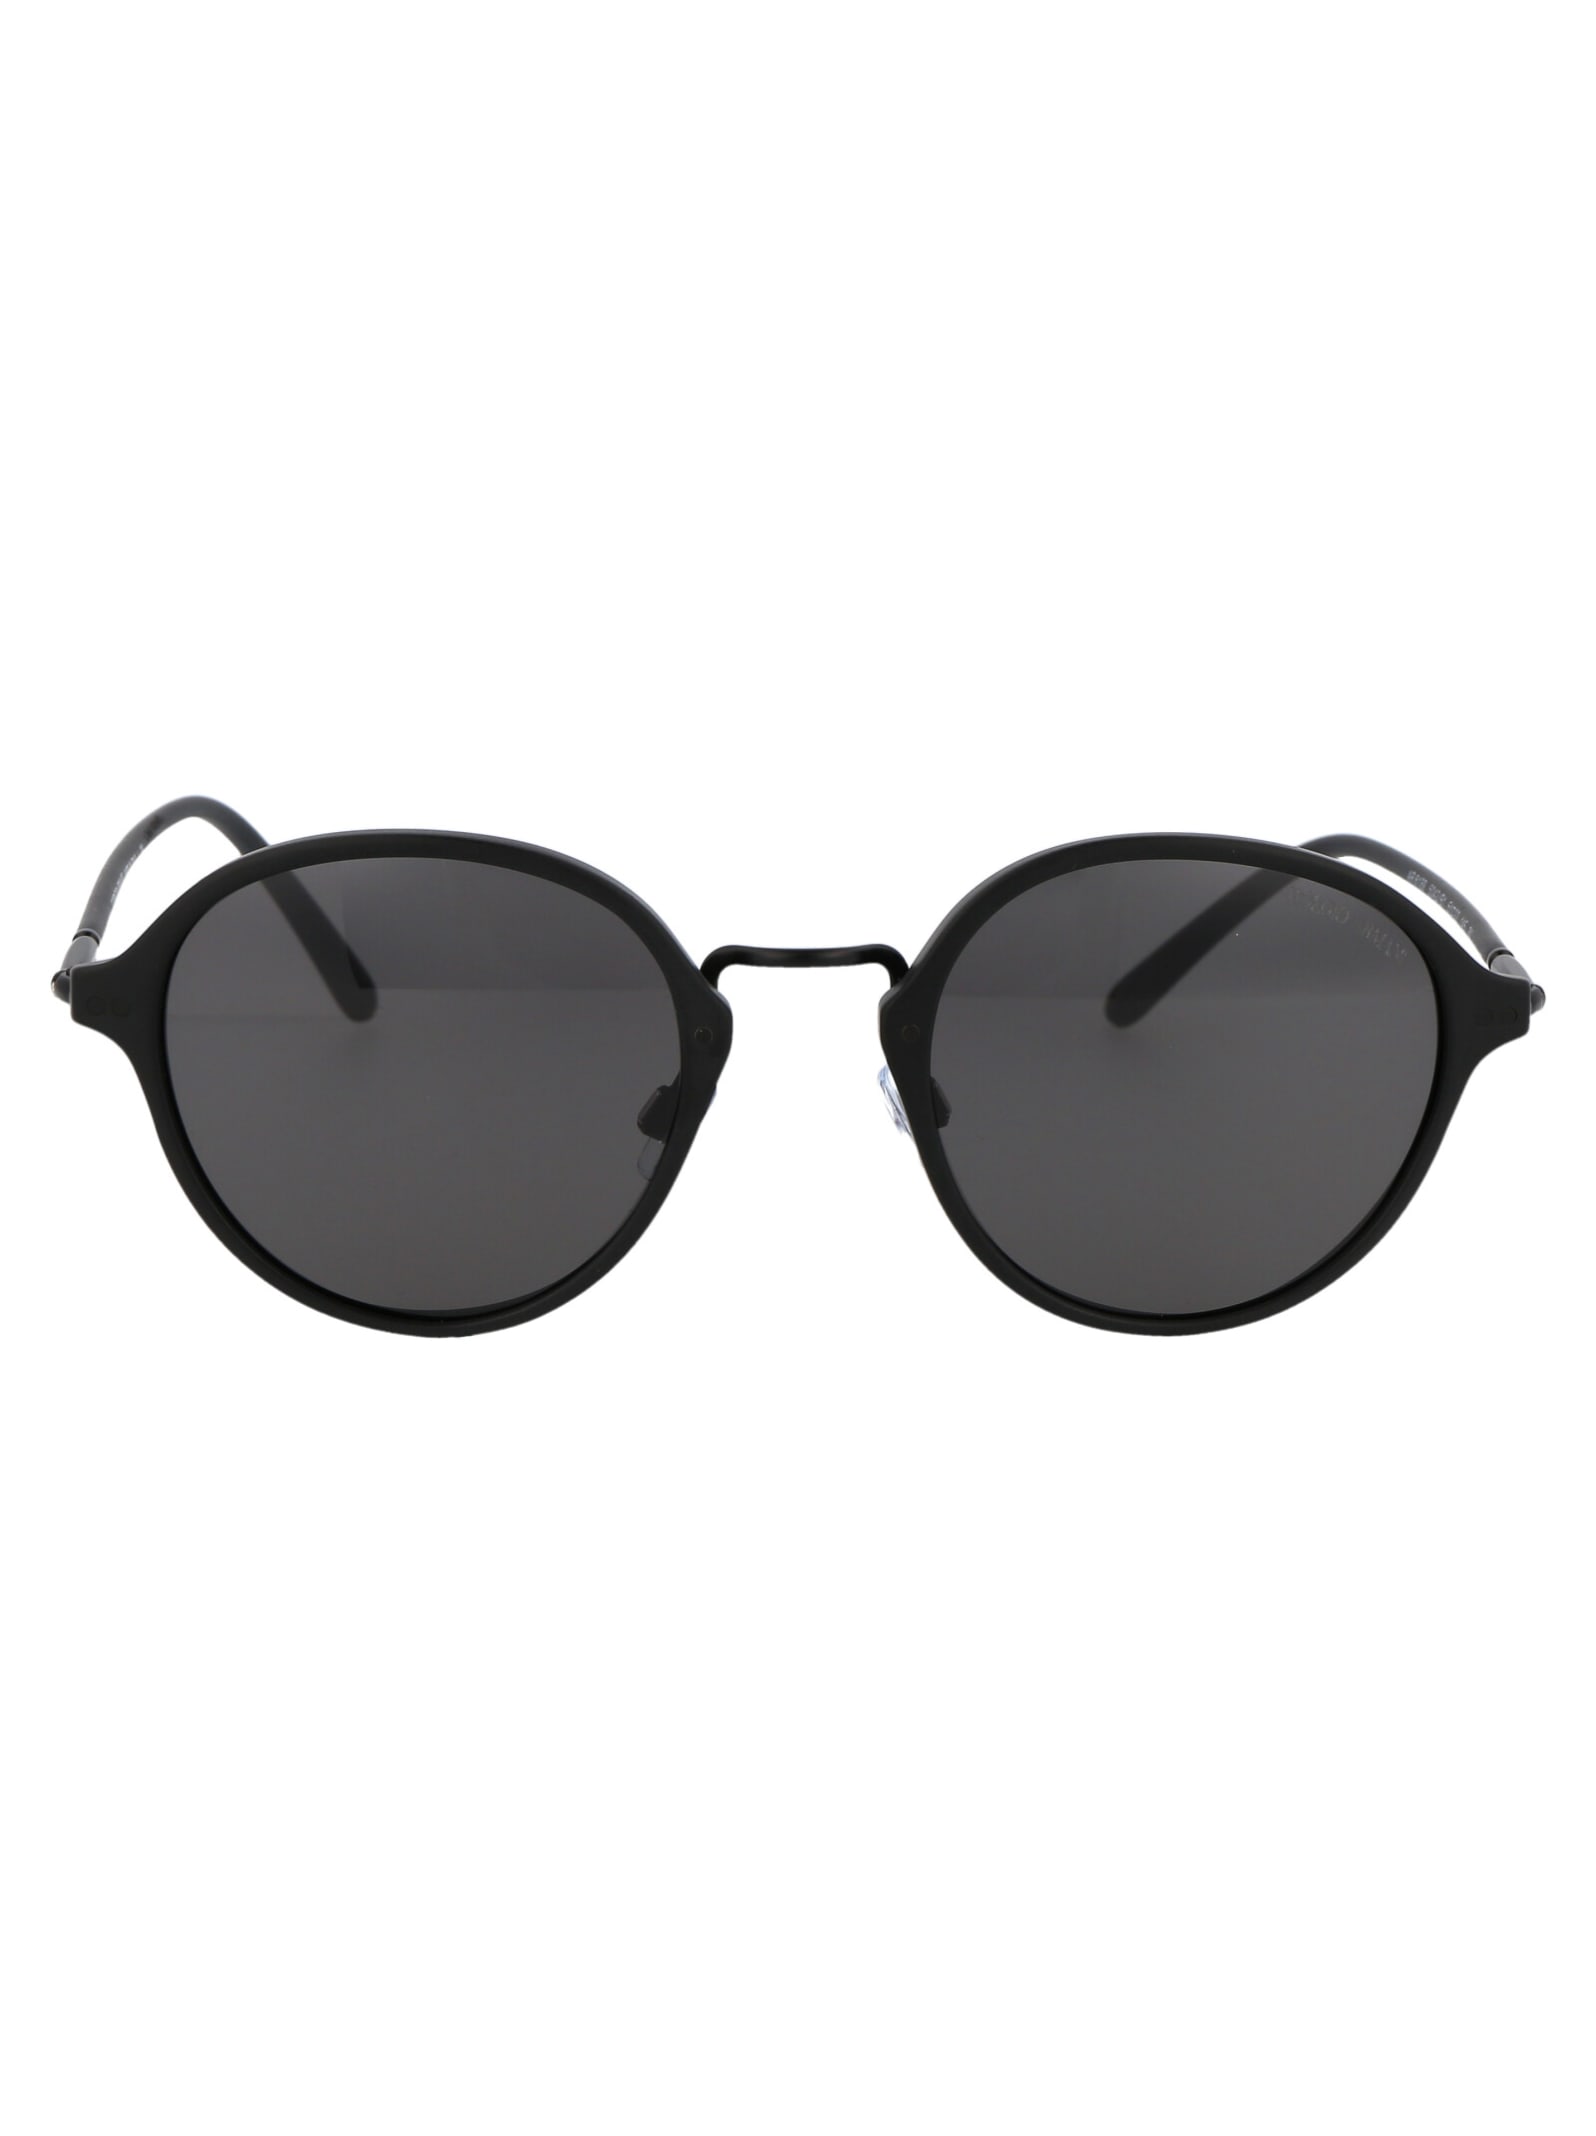 Giorgio Armani 0ar8139 Sunglasses